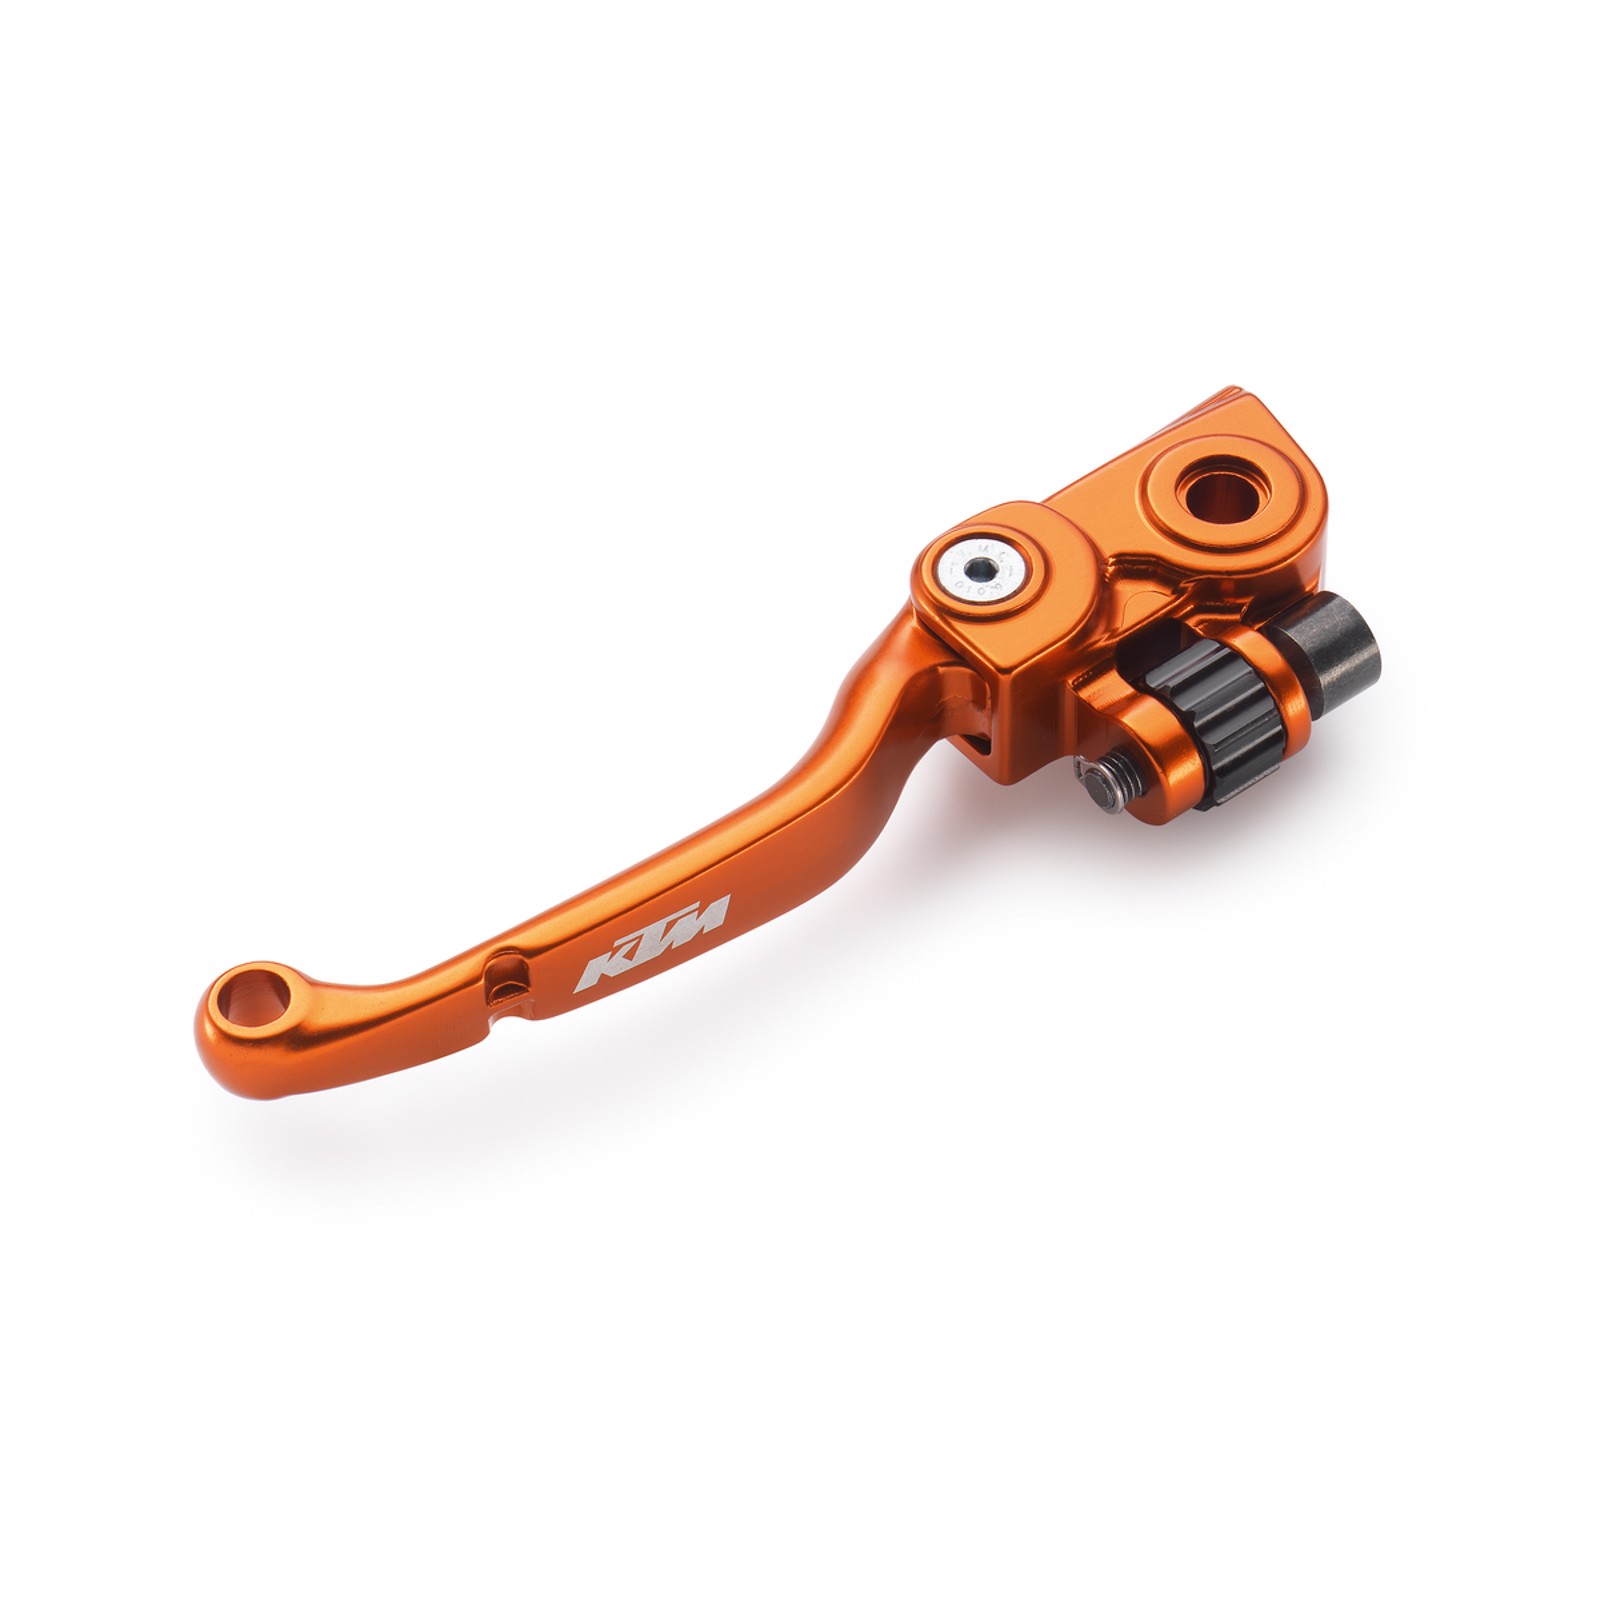 Apico Bremse und Kupplungshebel Für KTM Sxf 250 350 450 530 F 08-13 Orange Elite 